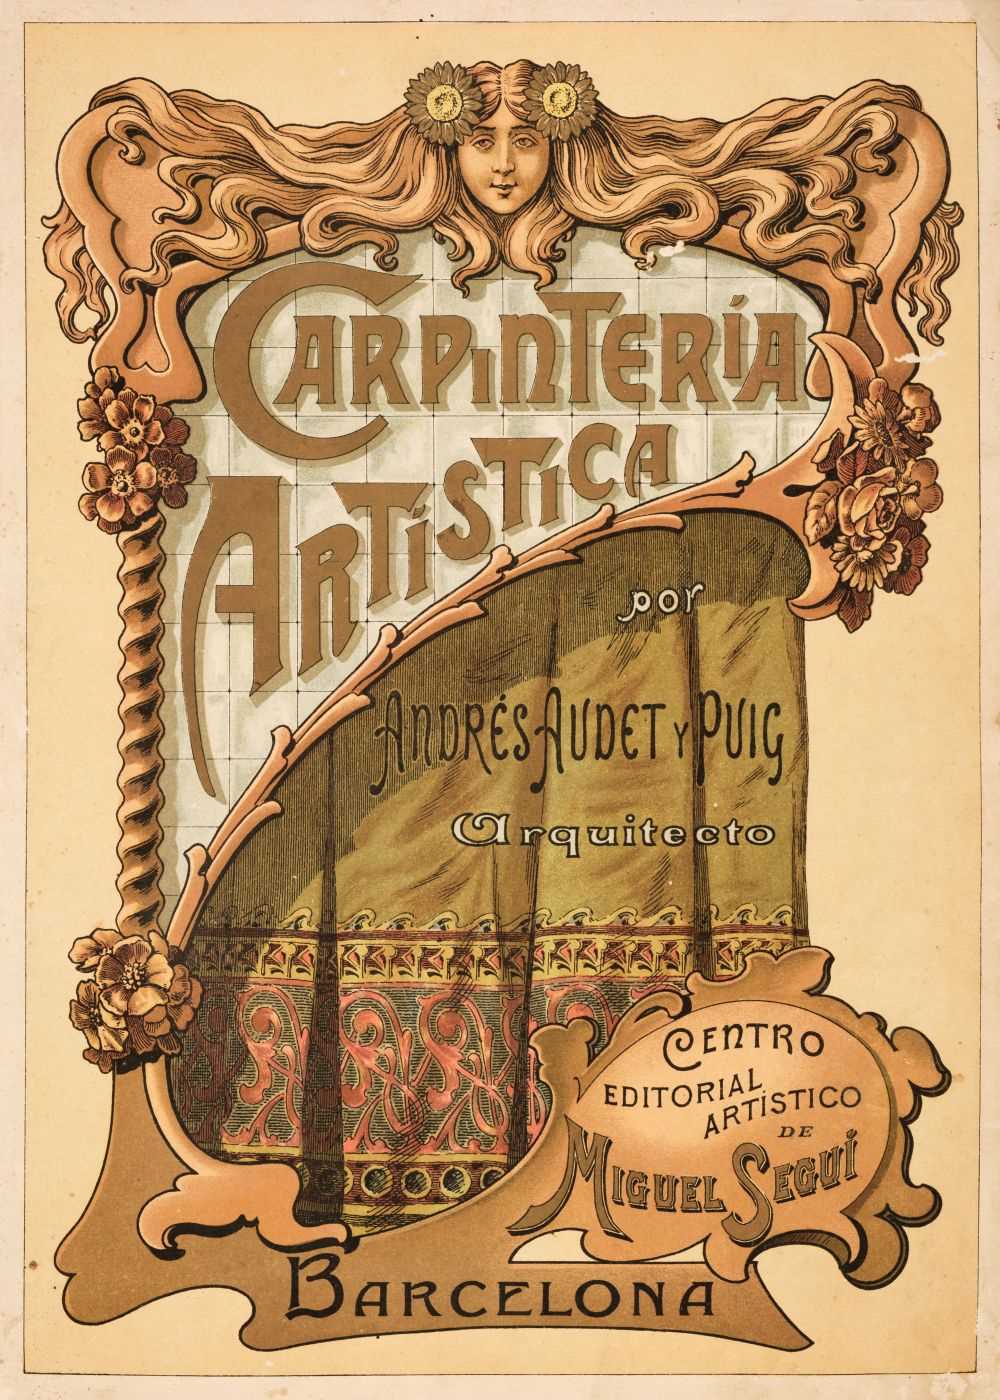 Lot 283 - Audet y Puig (Andrés). Carpinteria Artistica, Barcelona, circa 1900